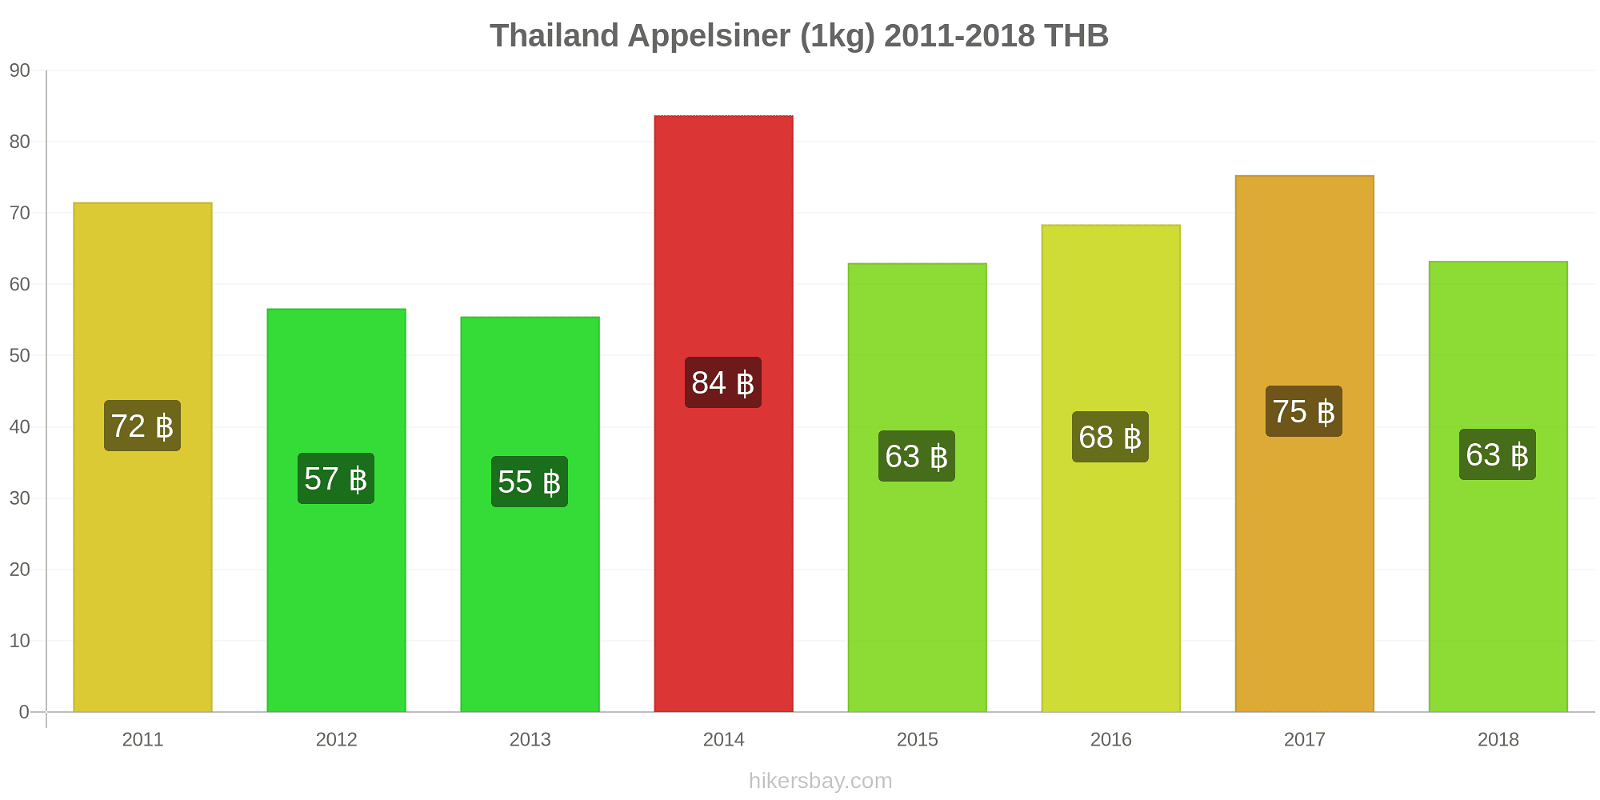 Thailand prisændringer Appelsiner (1kg) hikersbay.com